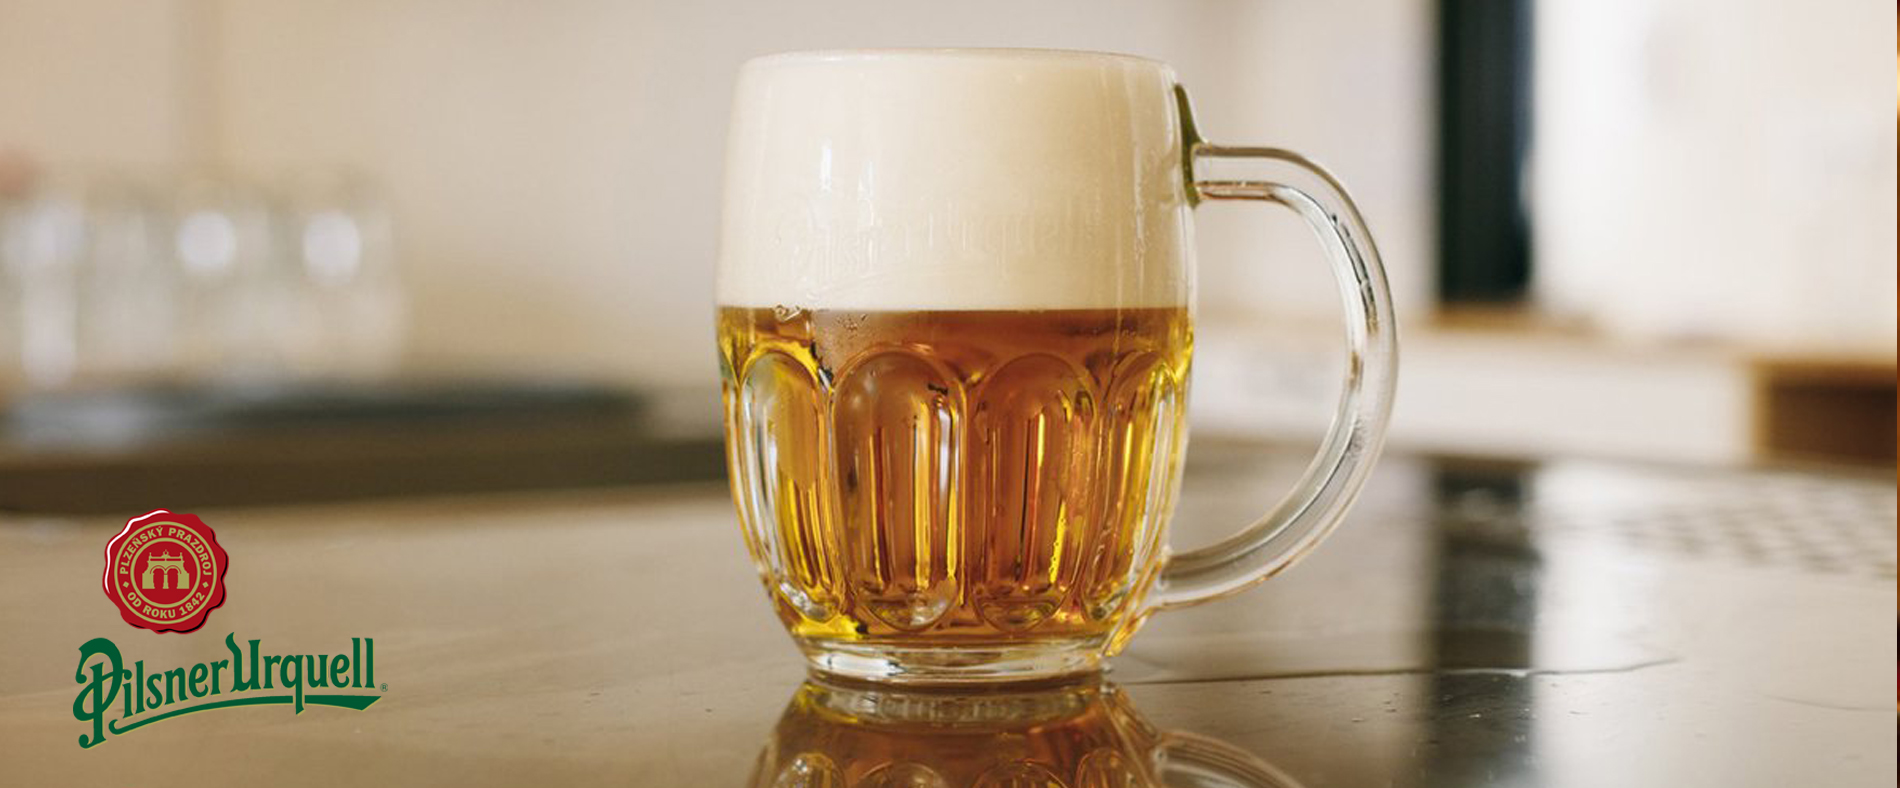 Pilsner Urquell - Bia của thiên tài